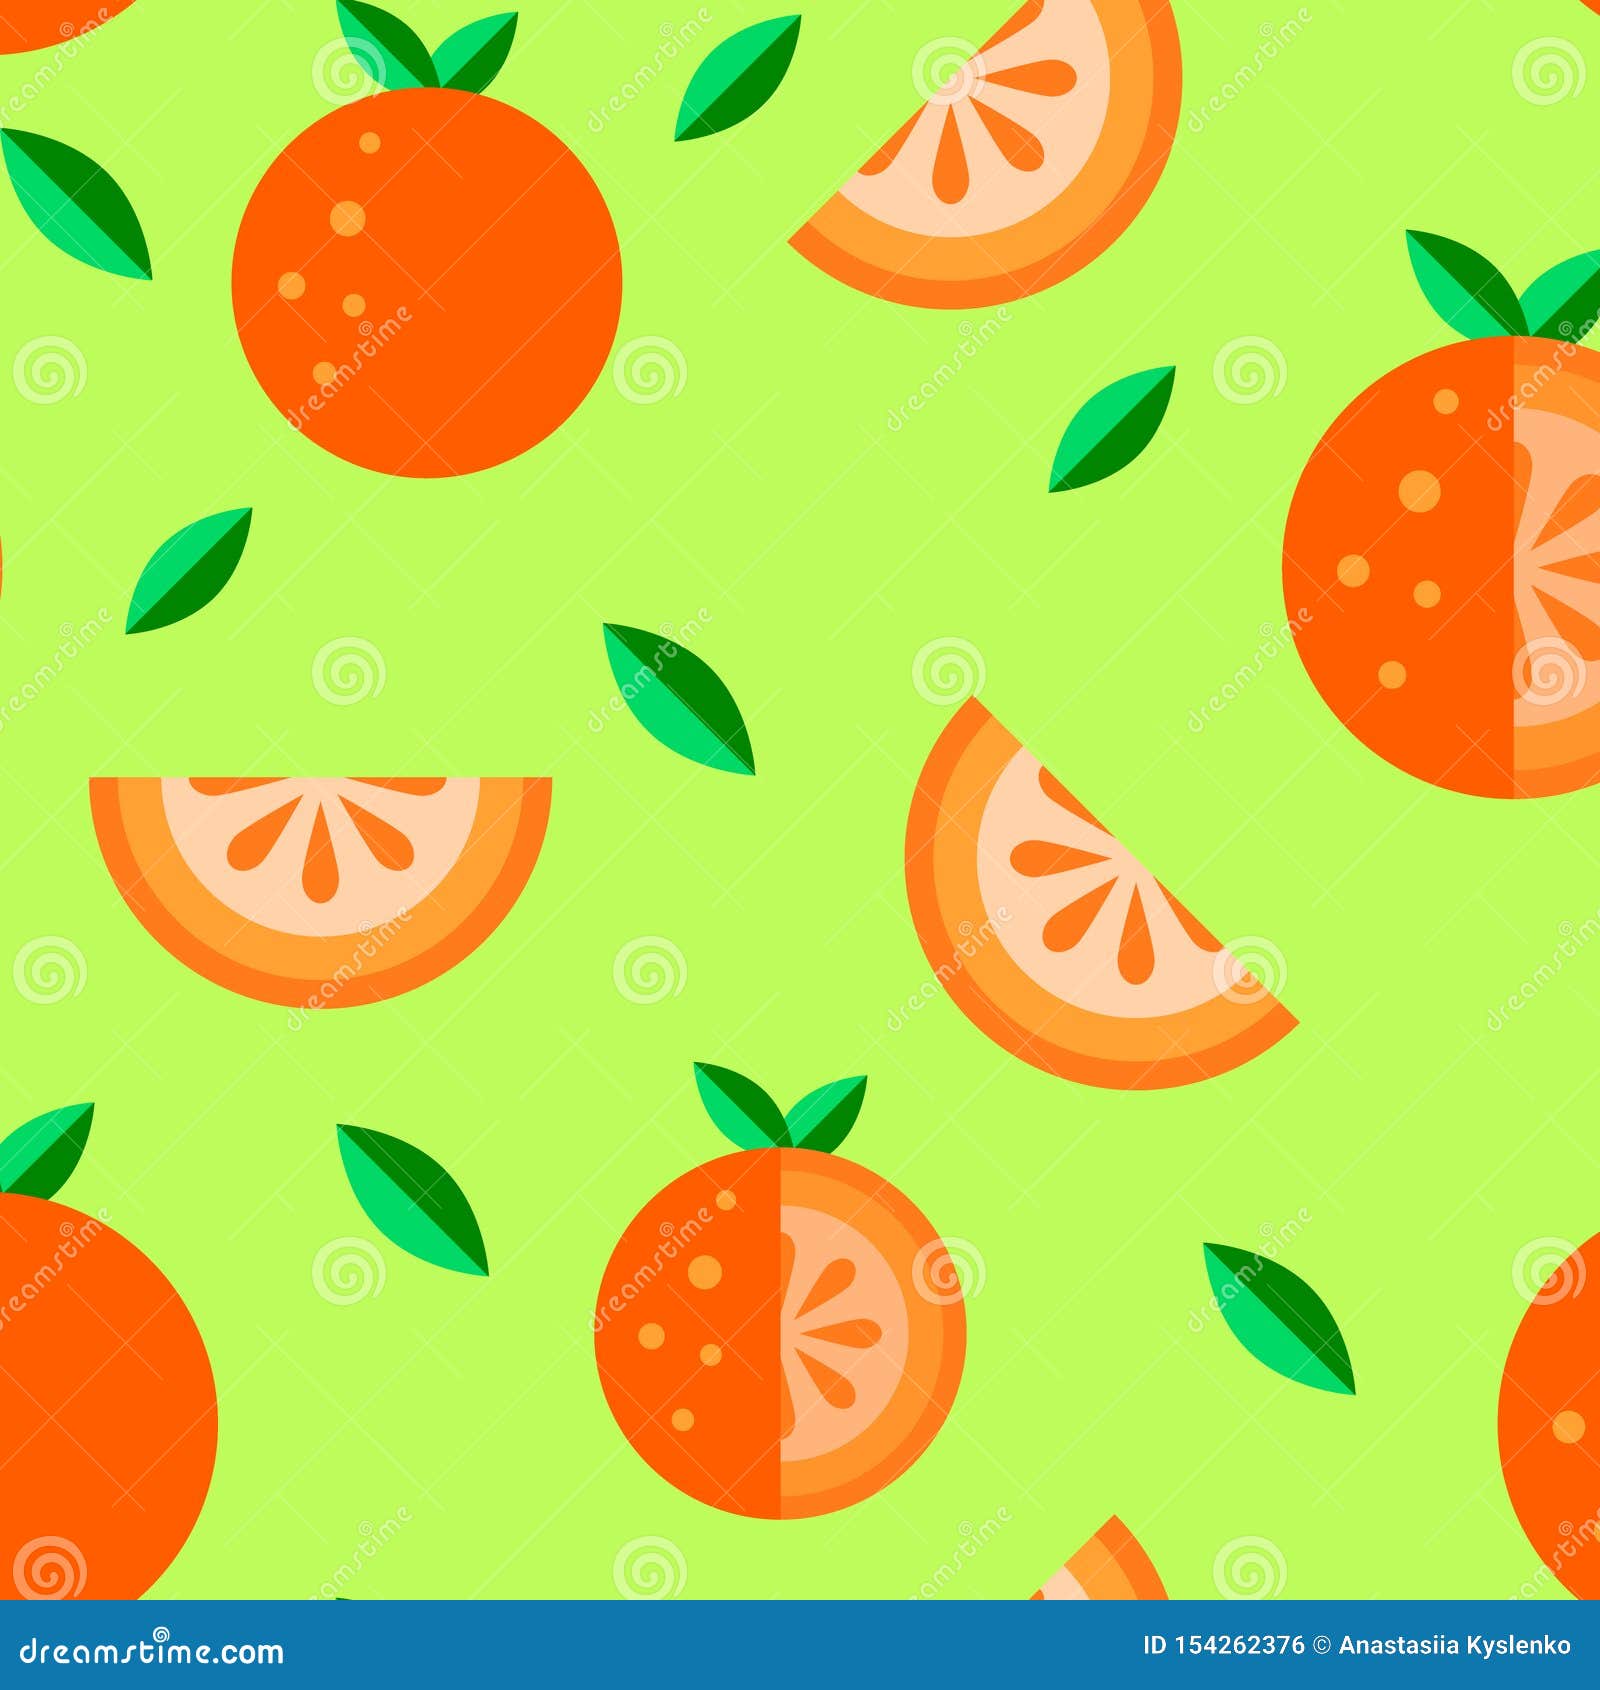 Màu cam tươi sáng của quả cam khiến ai nhìn thấy đều như thấy nguồn năng lượng và sức sống. Hãy chiêm ngưỡng bức hình này với quả cam đầy sức sống để cảm nhận thêm sự tươi mới và rực rỡ chính trong mùa hè này.